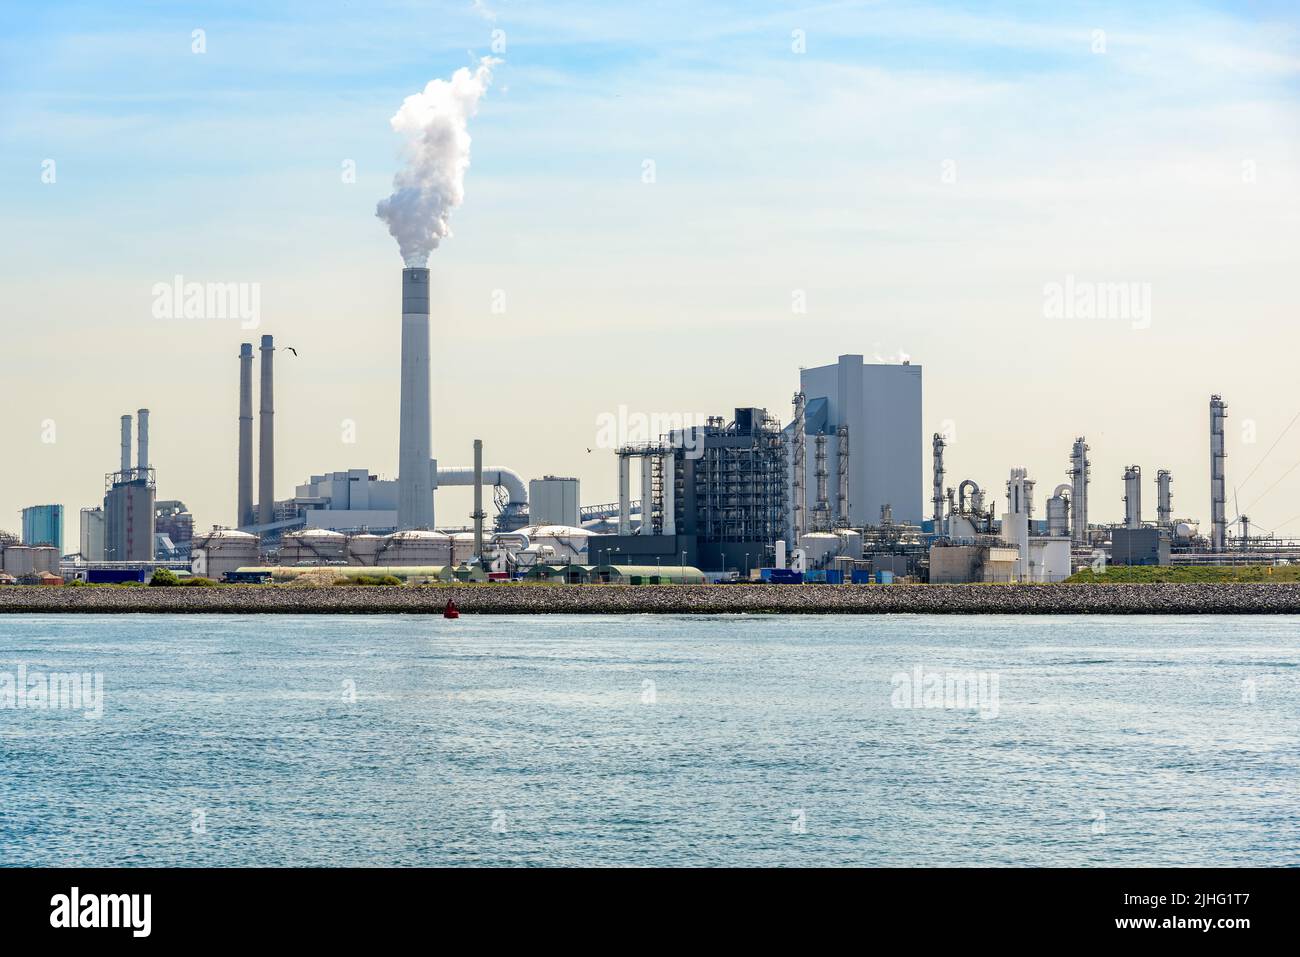 Vista de una refinería de petróleo junto al puerto en un soleado día de verano Foto de stock